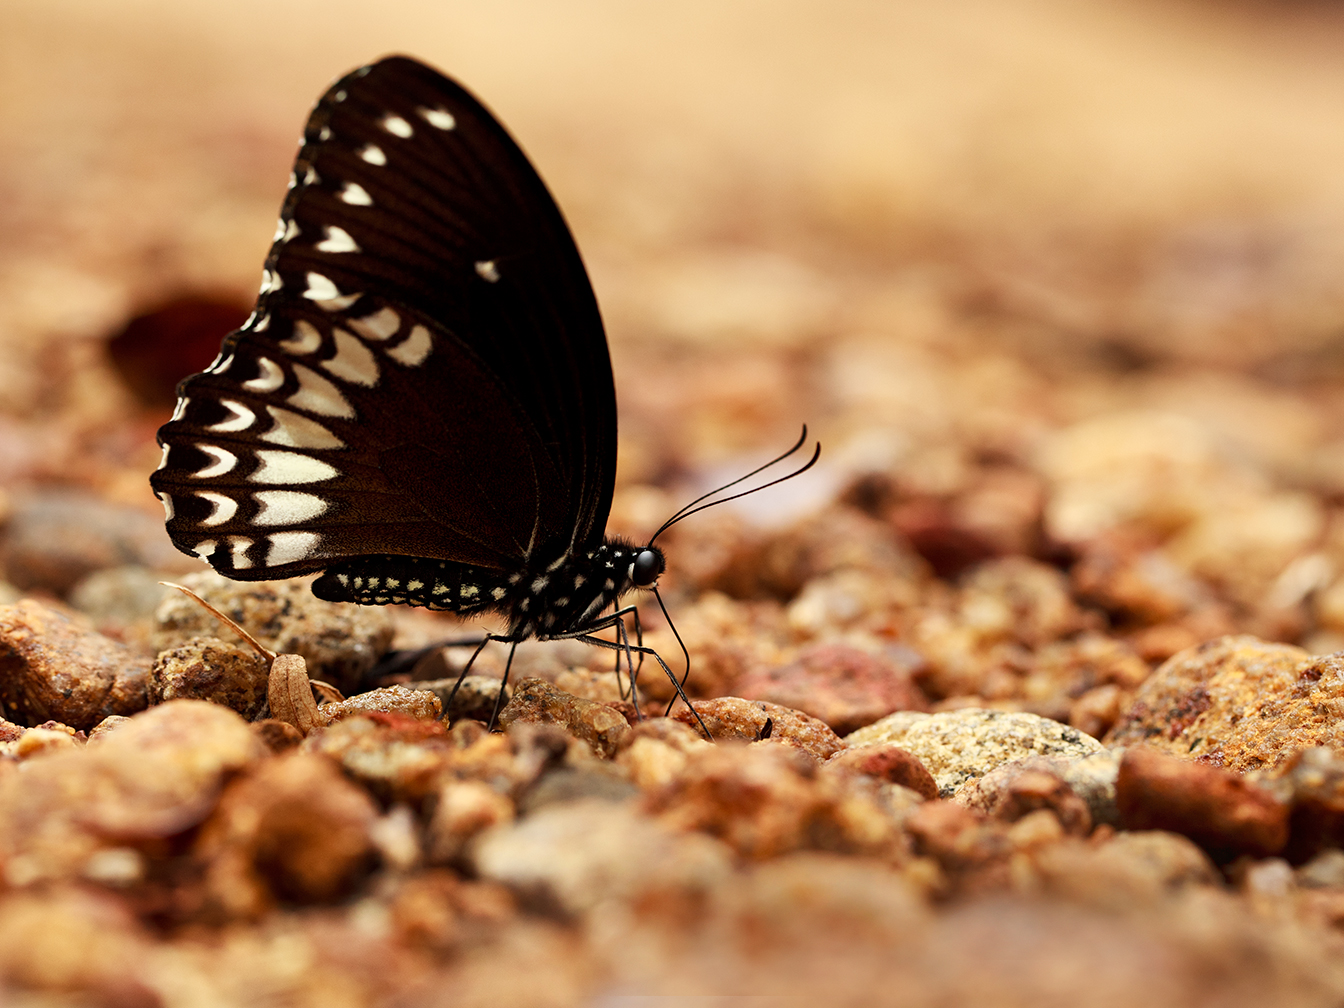  Datos increíbles sobre las mariposas